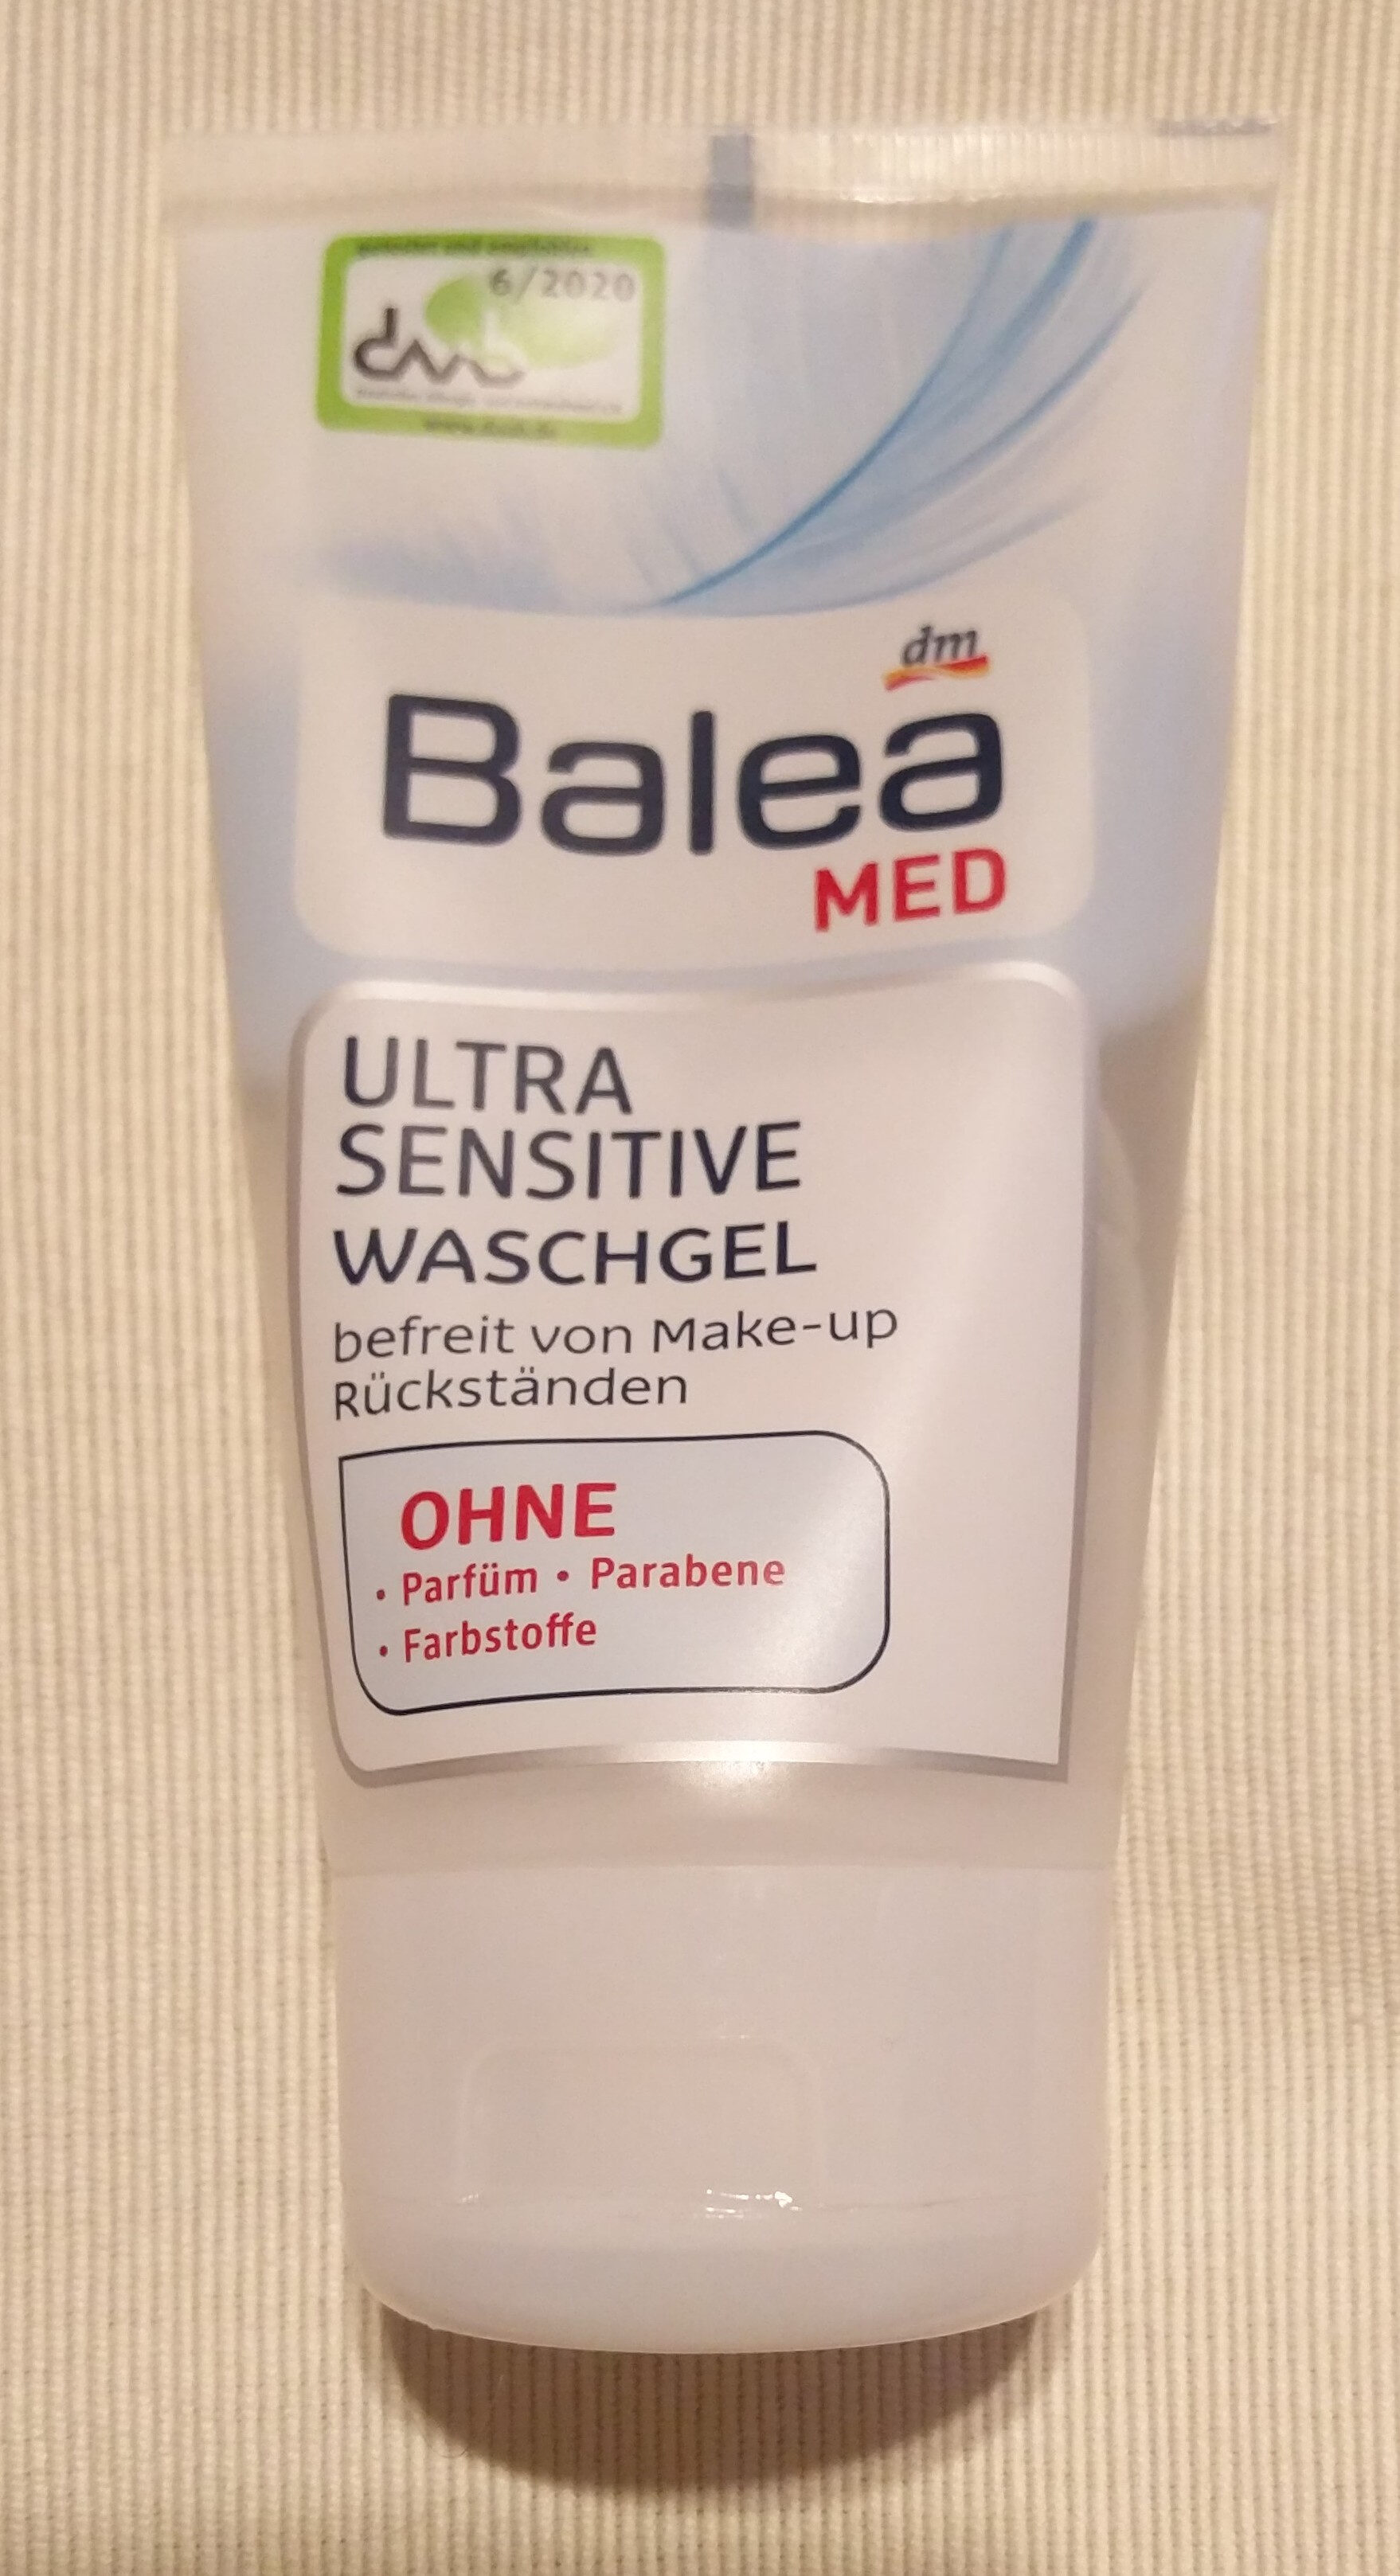 Ultra Sensitive Waschgel - Produkt - de